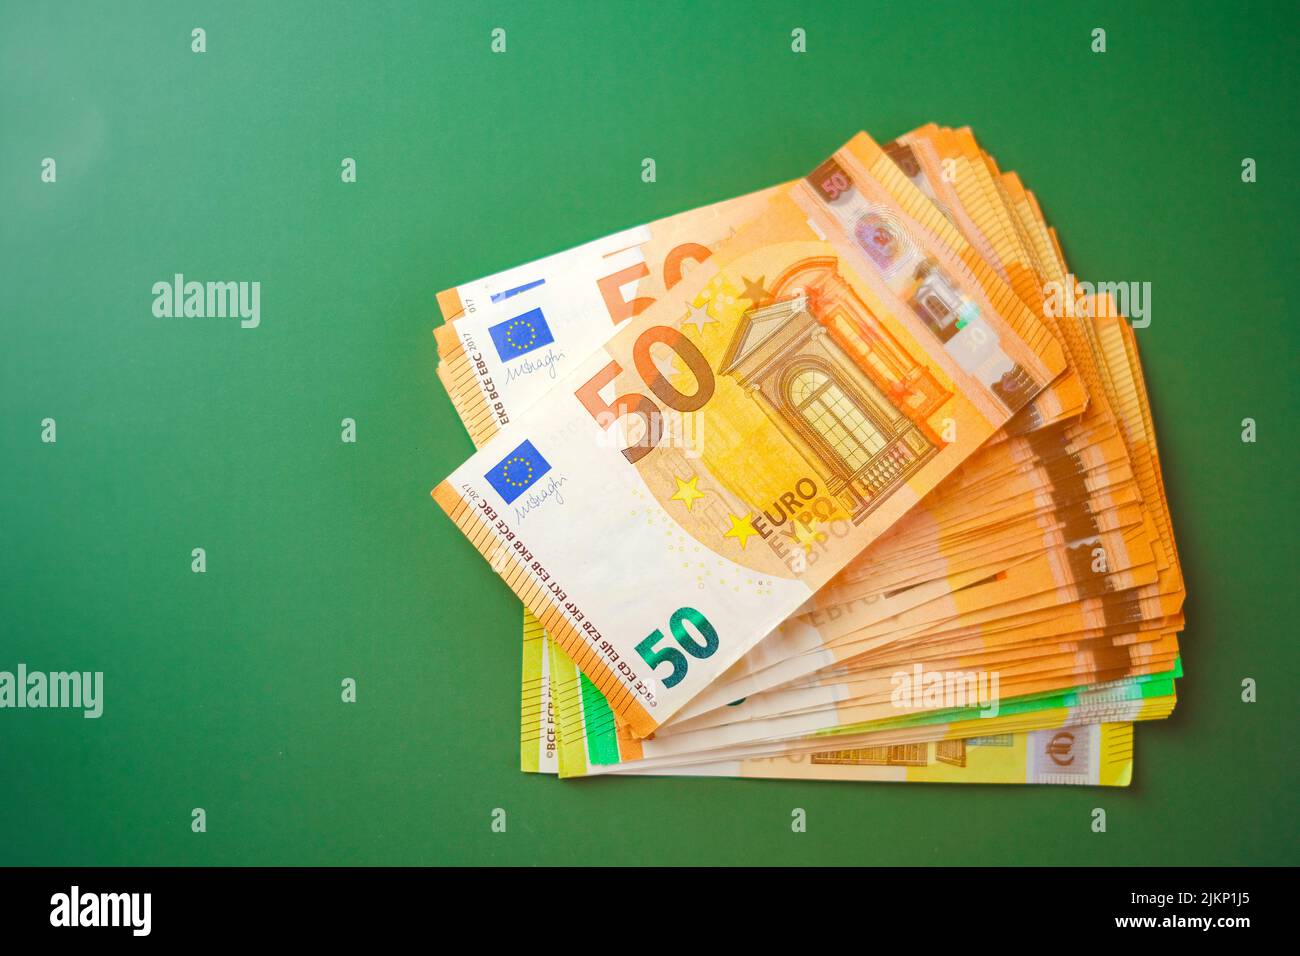 Jeu avec monnaie - euros - Revenus et dépenses